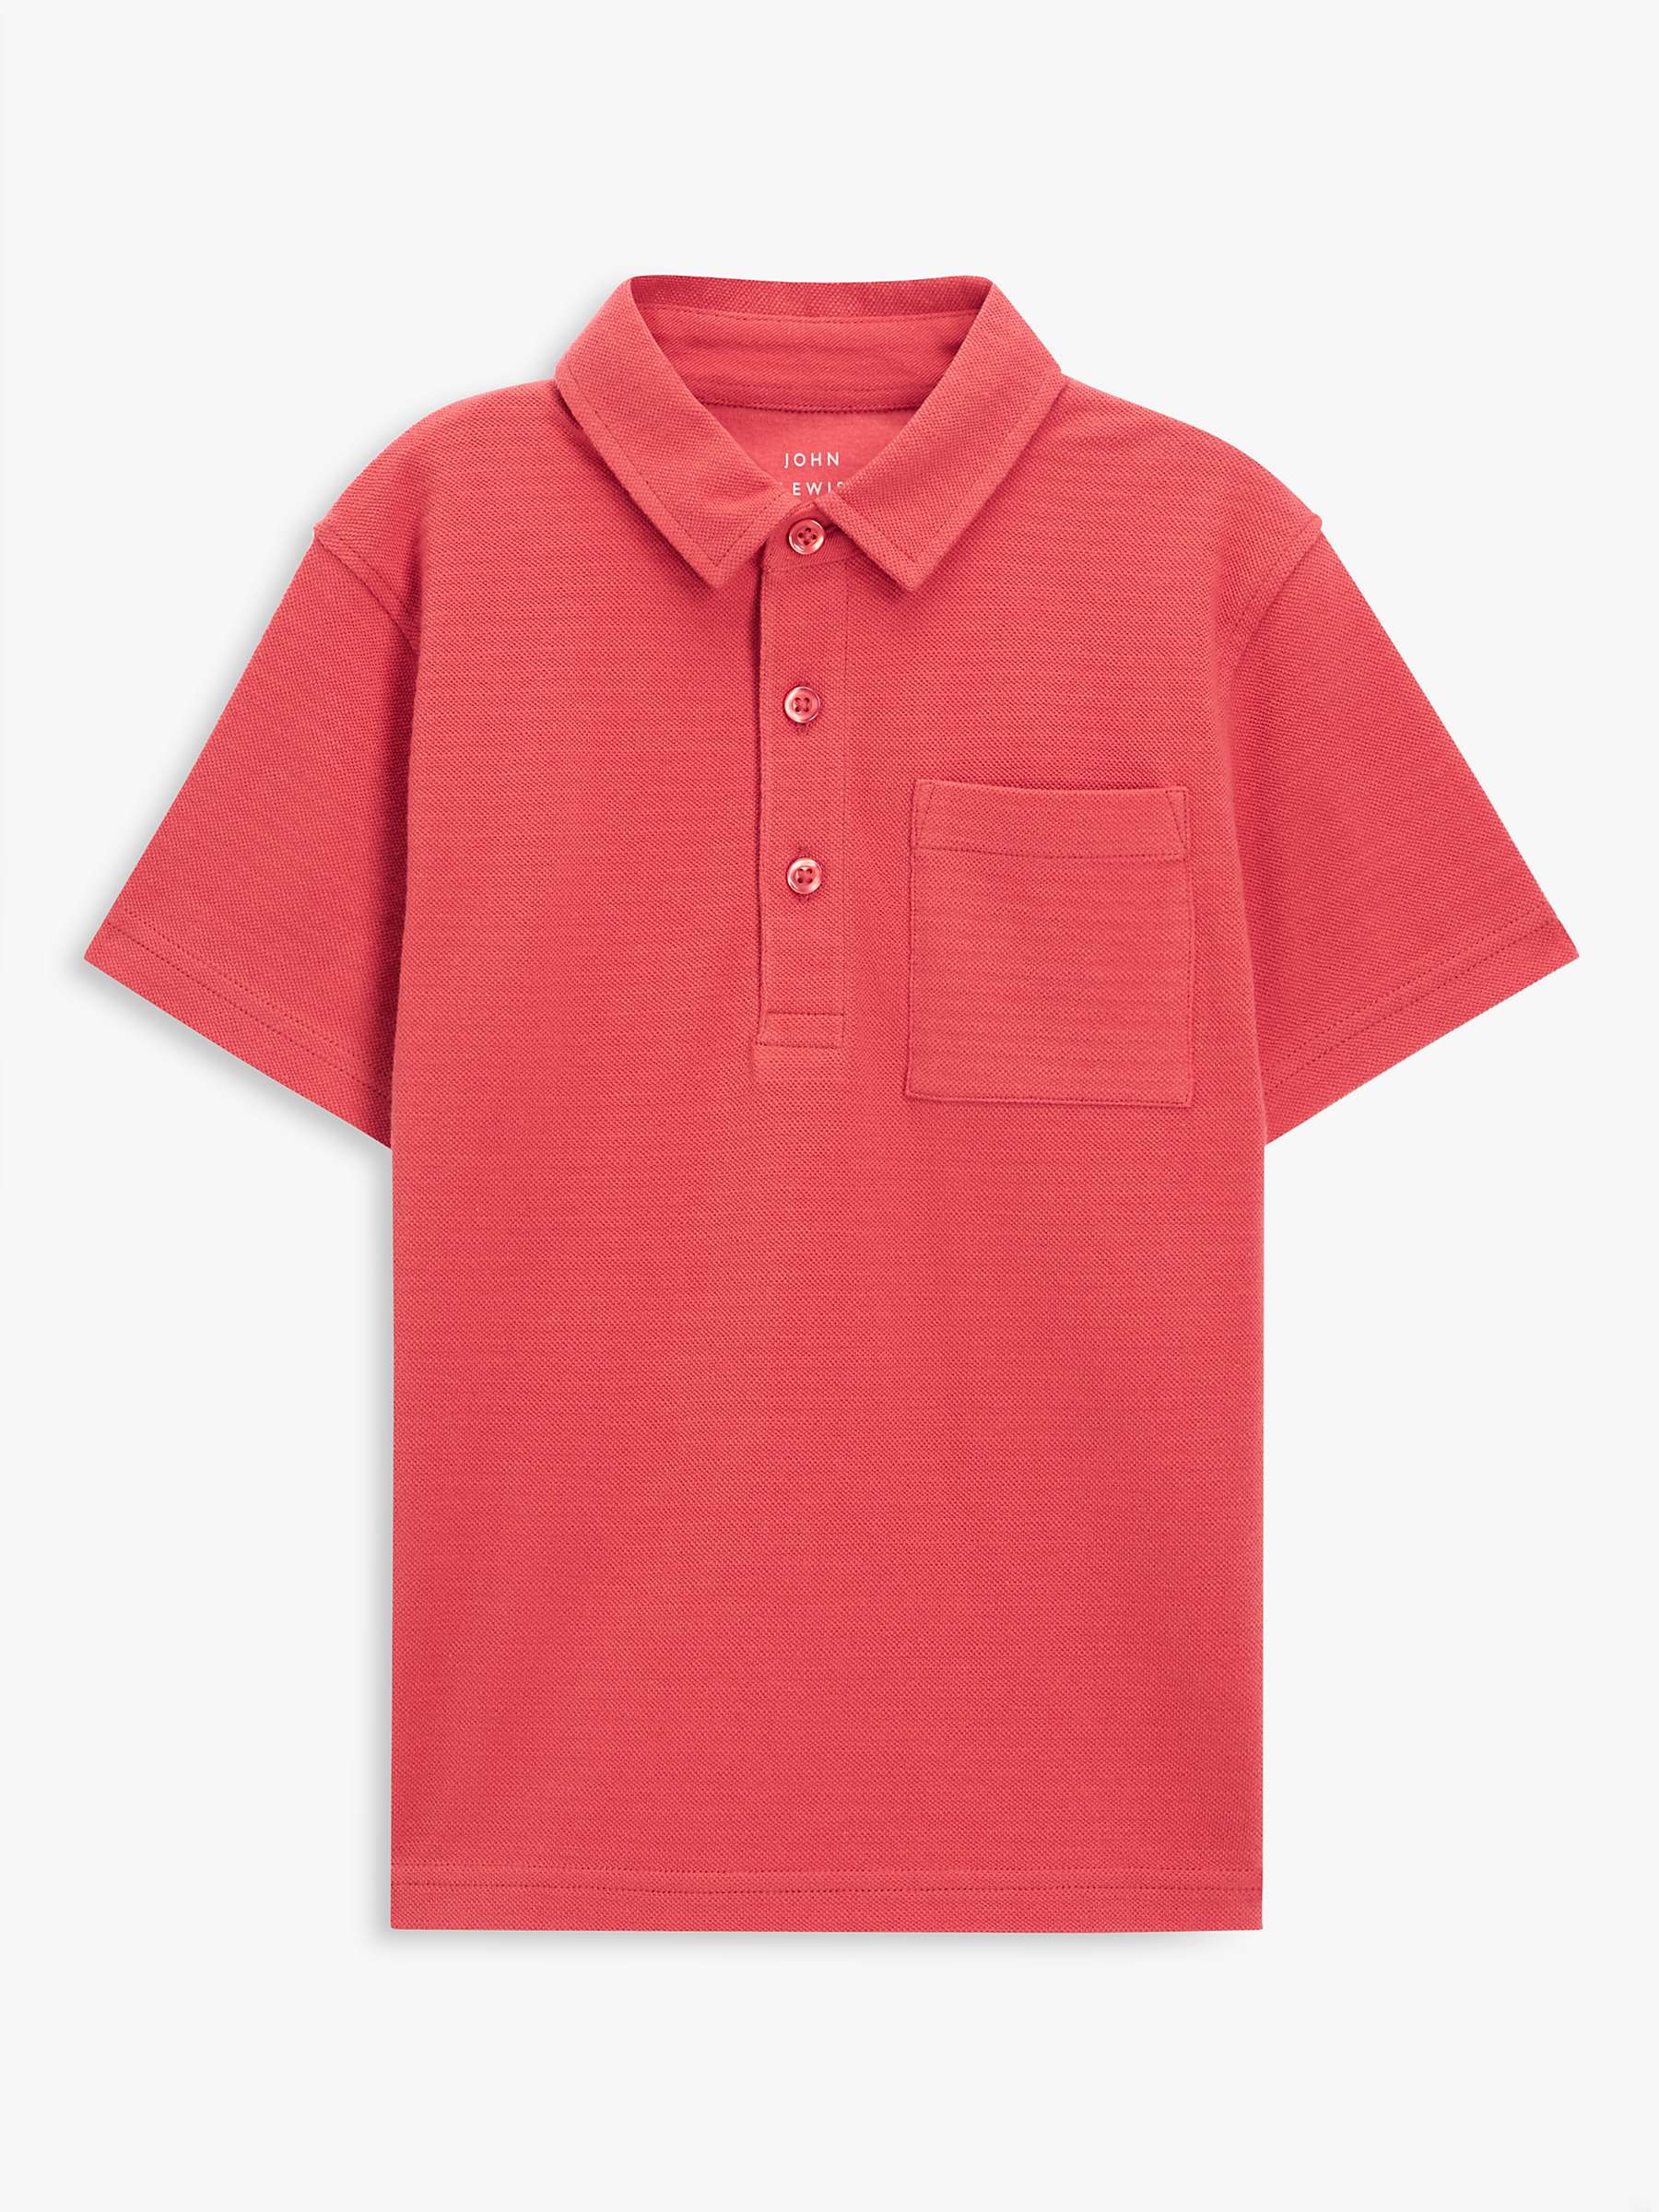 John Lewis Kids' Plain Patch Pocket Polo Shirt, Red at John Lewis ...